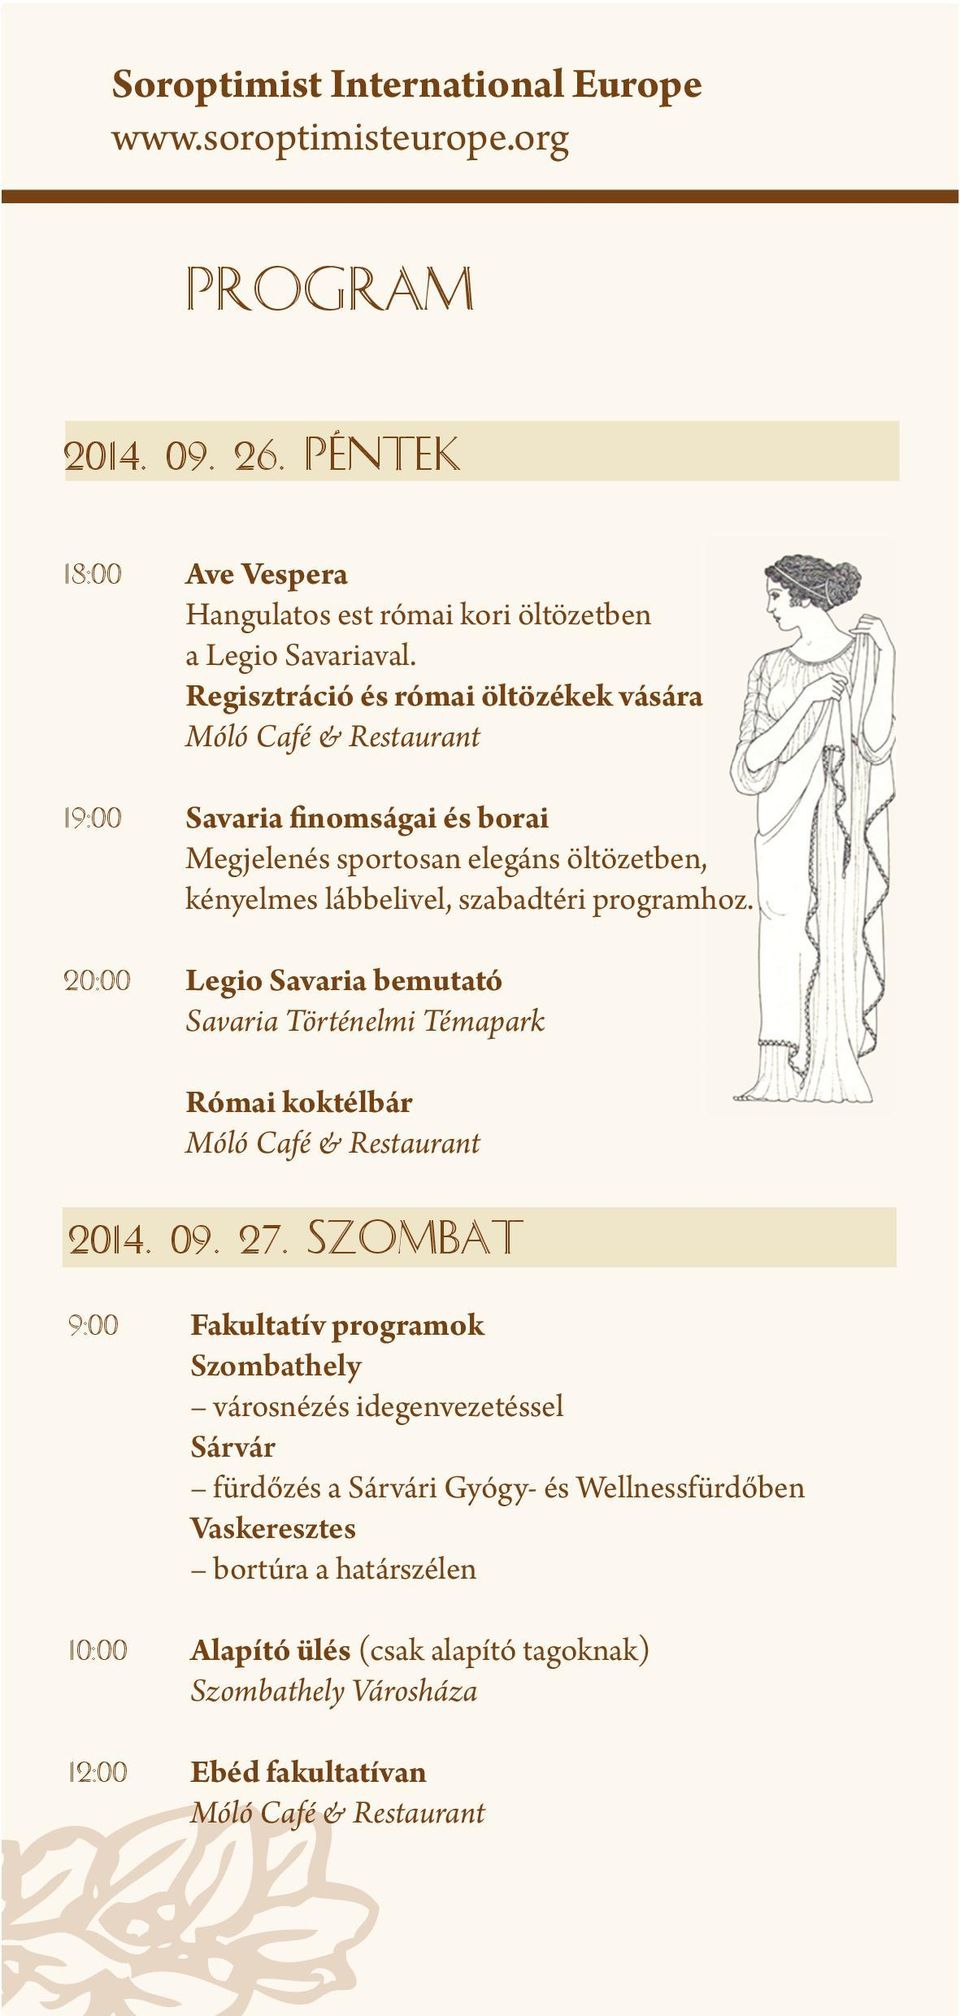 20:00 Legio Savaria bemutató Savaria Történelmi Témapark Római koktélbár Móló Café & Restaurant 2014. 09. 27.